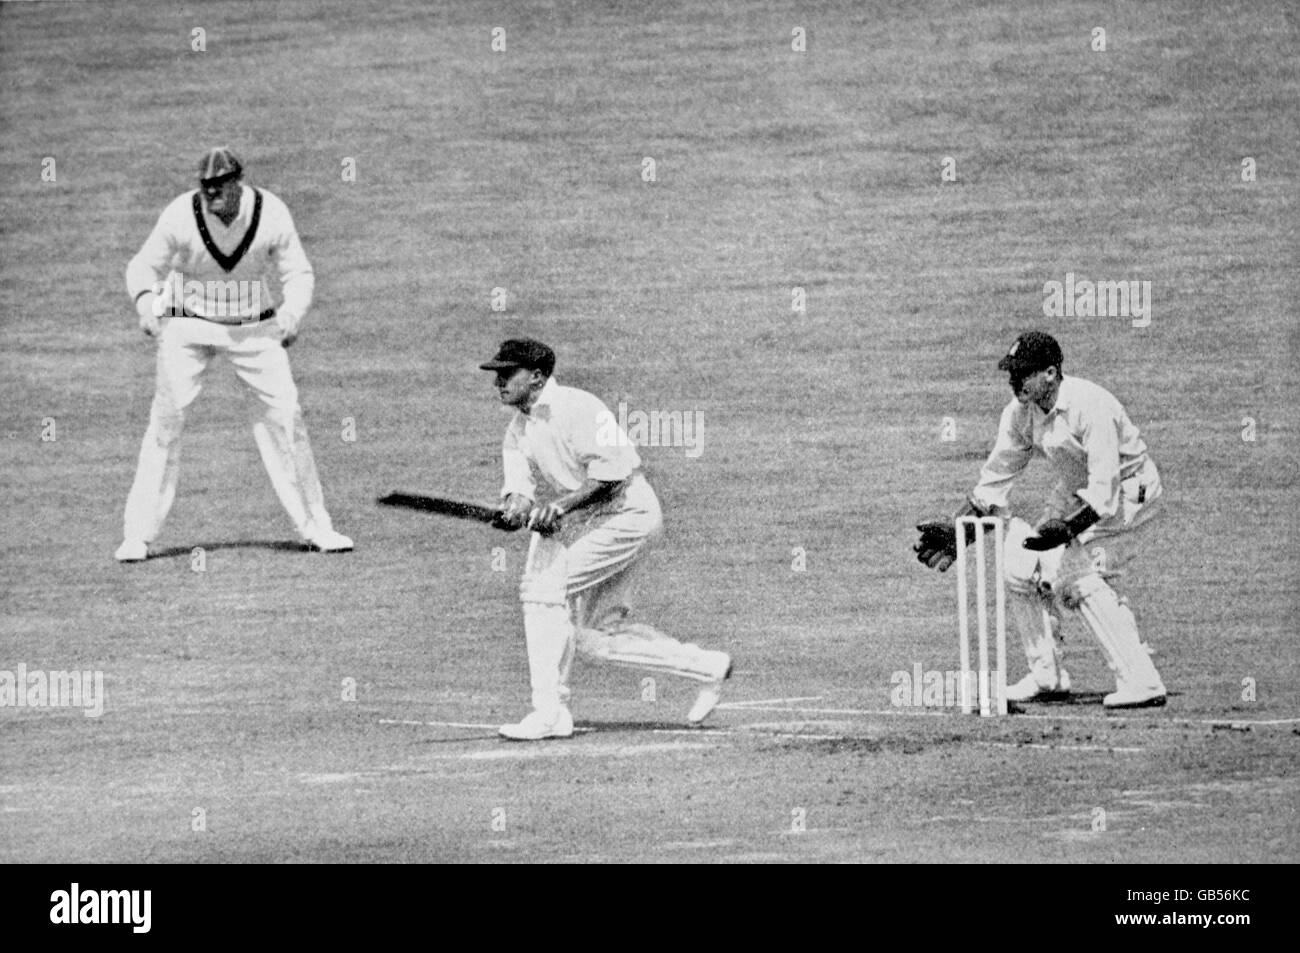 Cricket - The Ashes - Dritter Test - England gegen Australien - Headingley - erster Tag. Der Australier Don Bradman (c) kann auf seinem Weg zu einer Punktzahl von 334 weitere Runs erzielen, beobachtet von dem englischen Wicketkeeper George Duckworth (r) Stockfoto